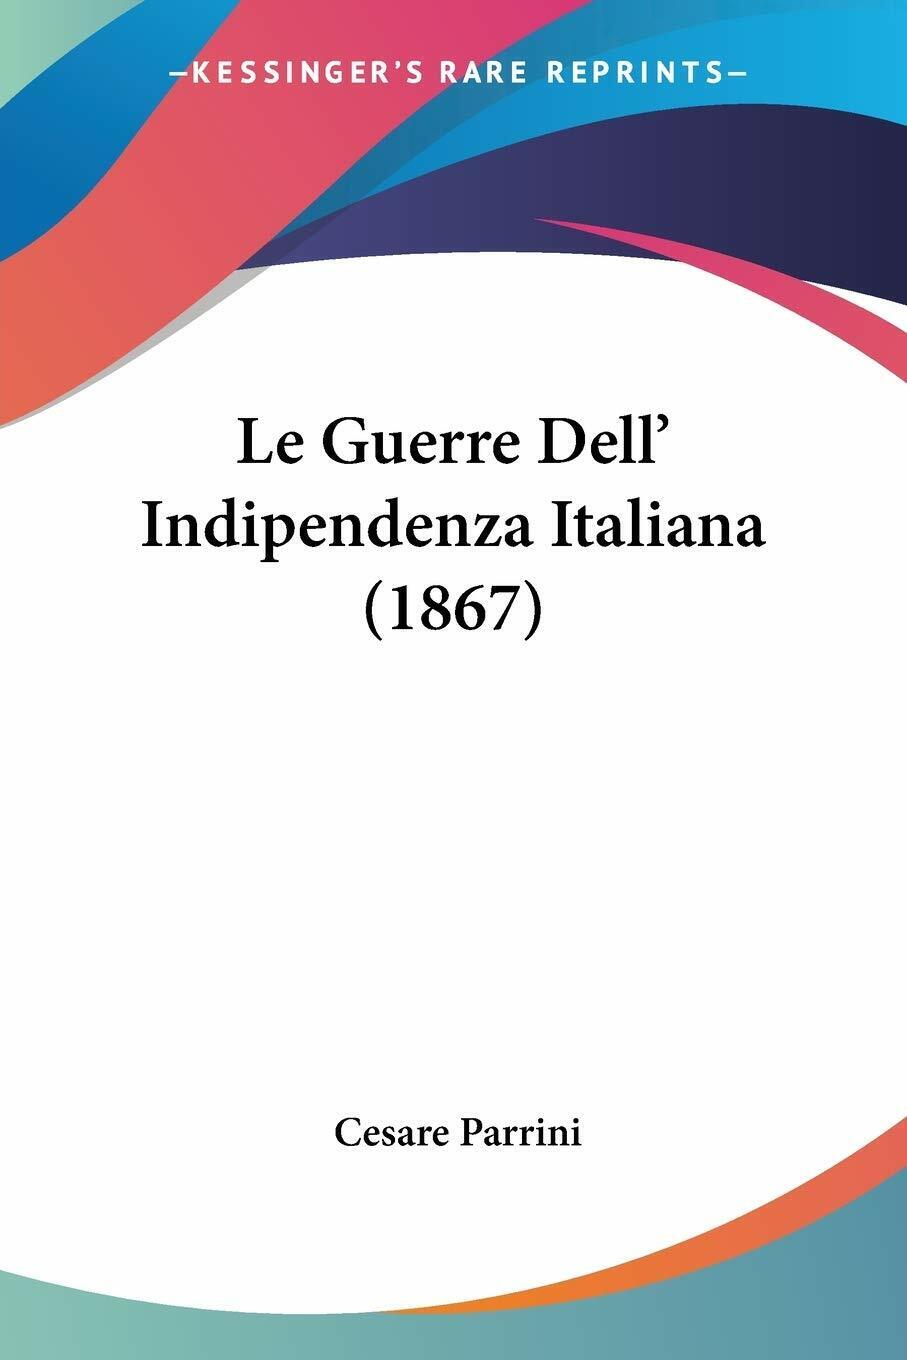  Le Guerre DelL'Indipendenza Italiana (1867) di Cesare Parrini,  2010,  Kessing